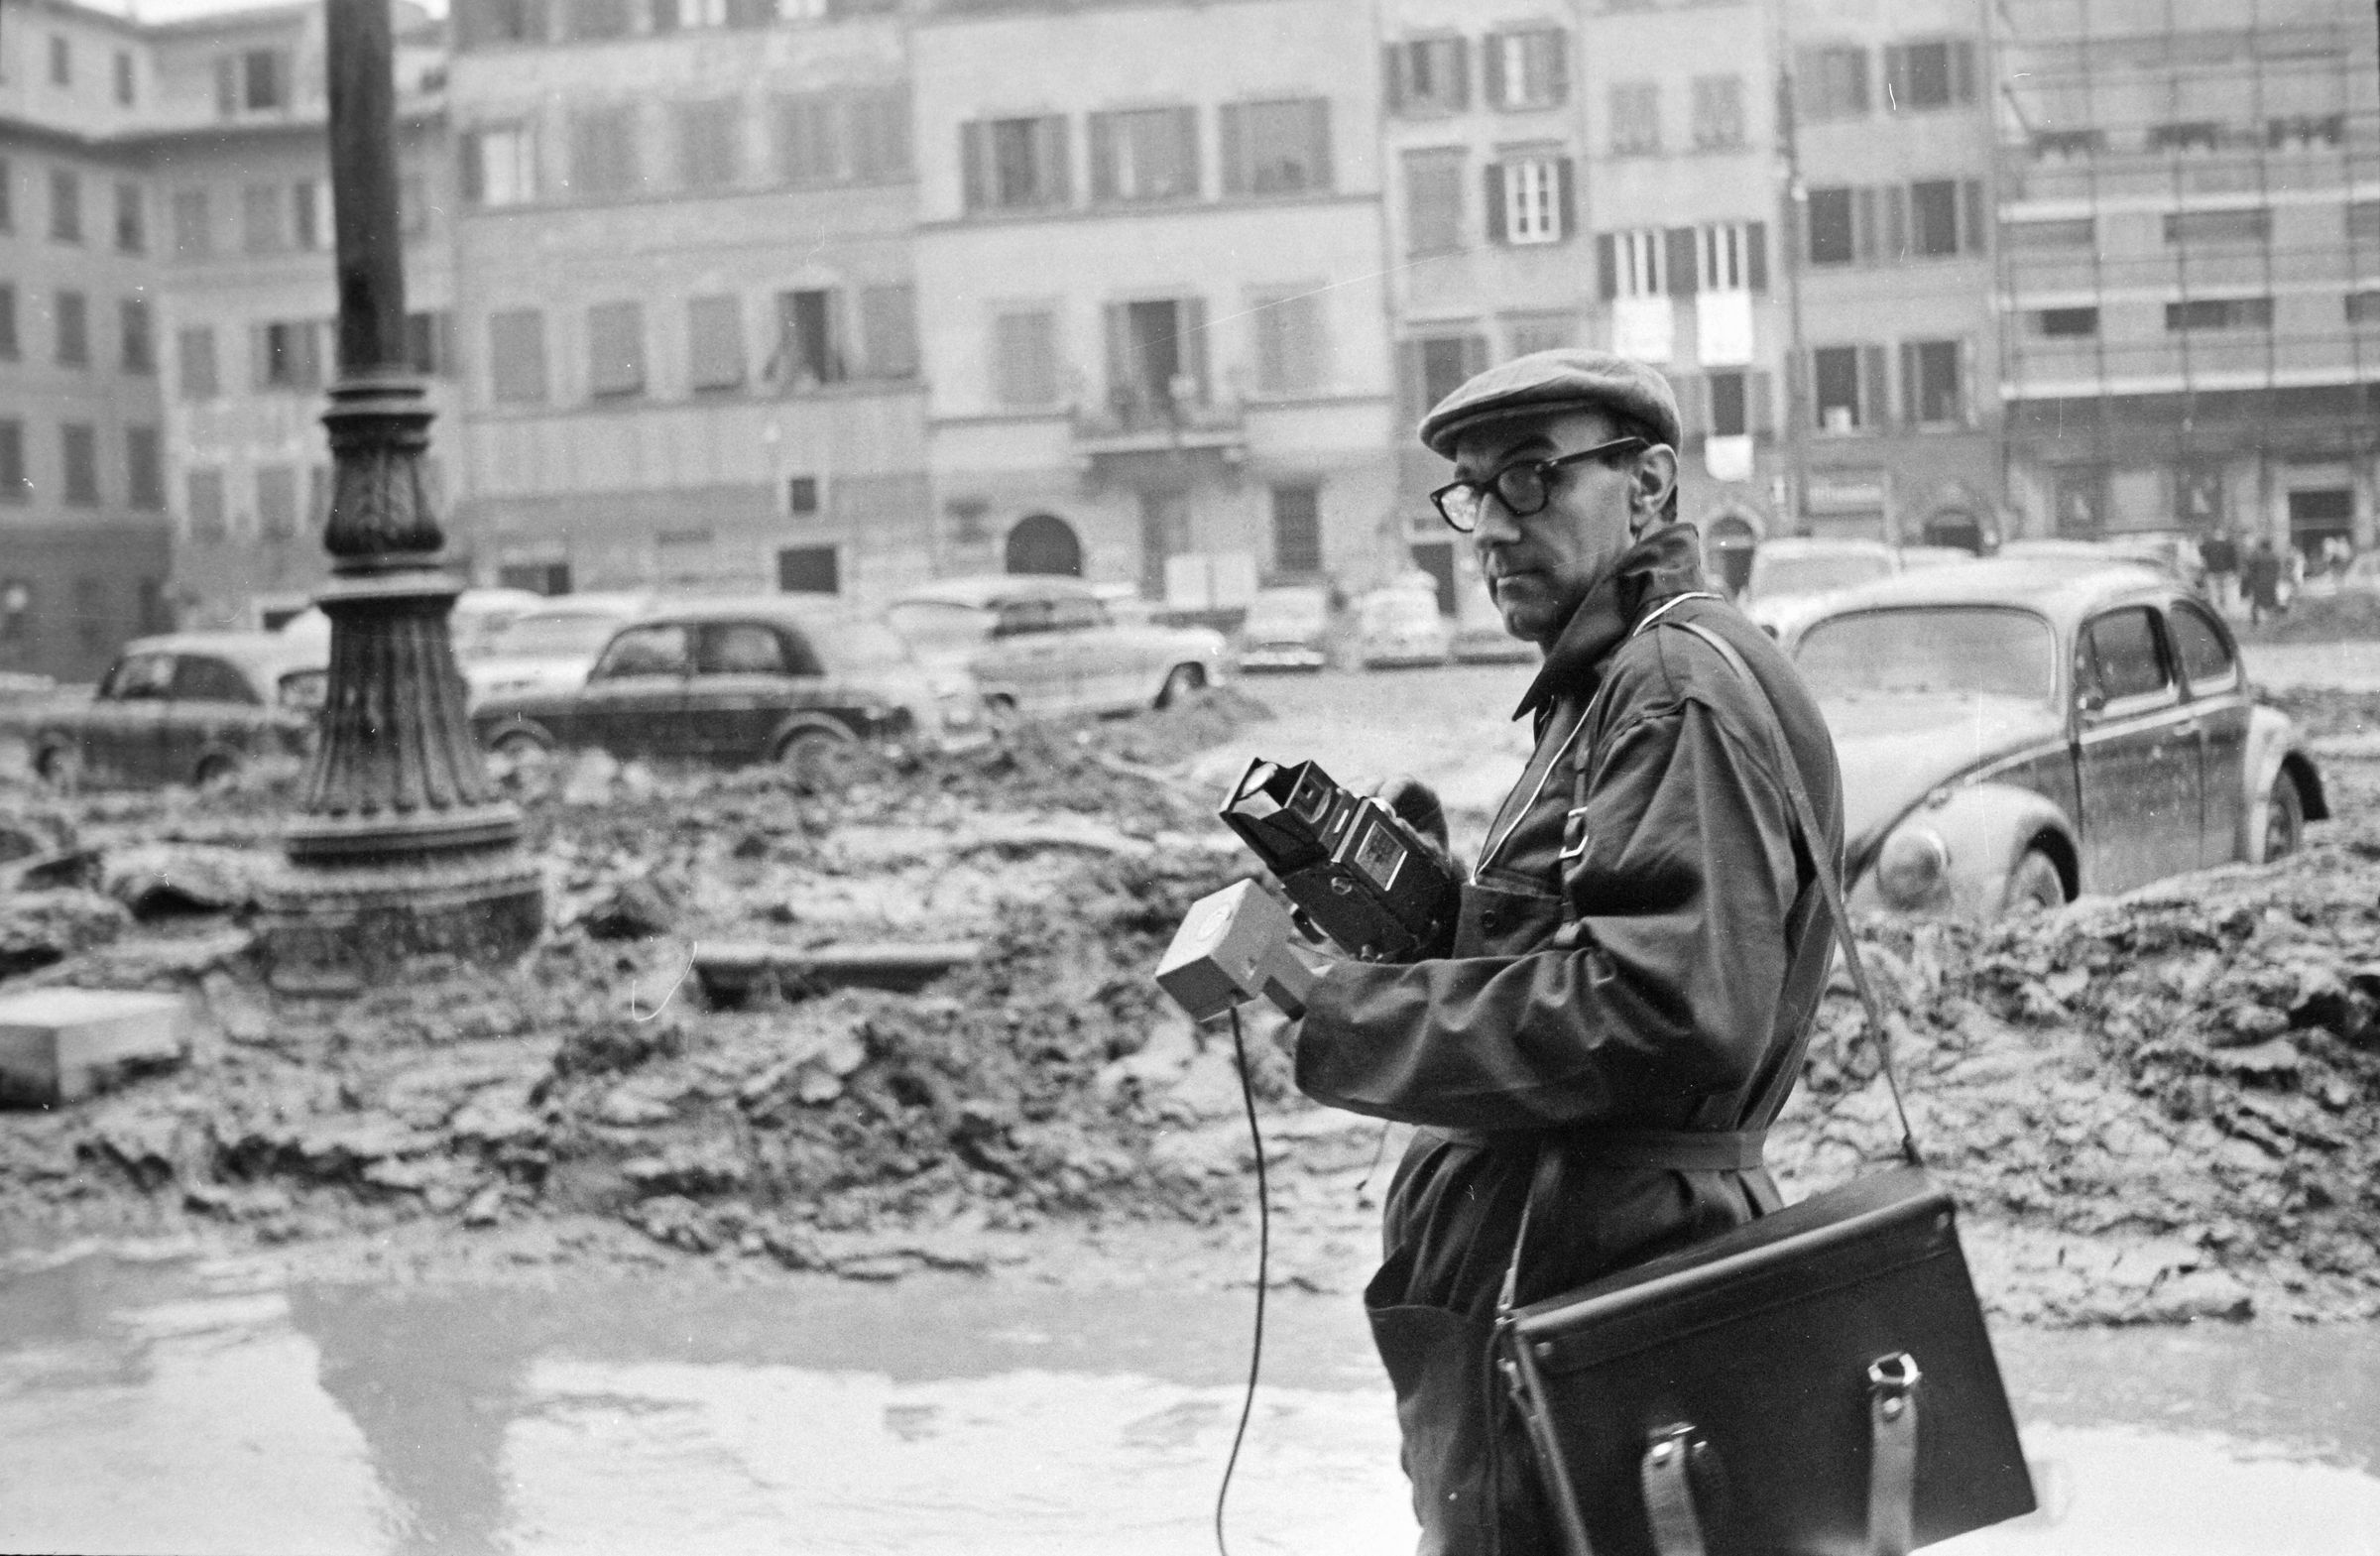 Fotografo non identificato, Firenze - Operatore del GFN in Piazza S. Croce, 1966, gelatina ai sali d'argento/pellicola, 35mm, R001784